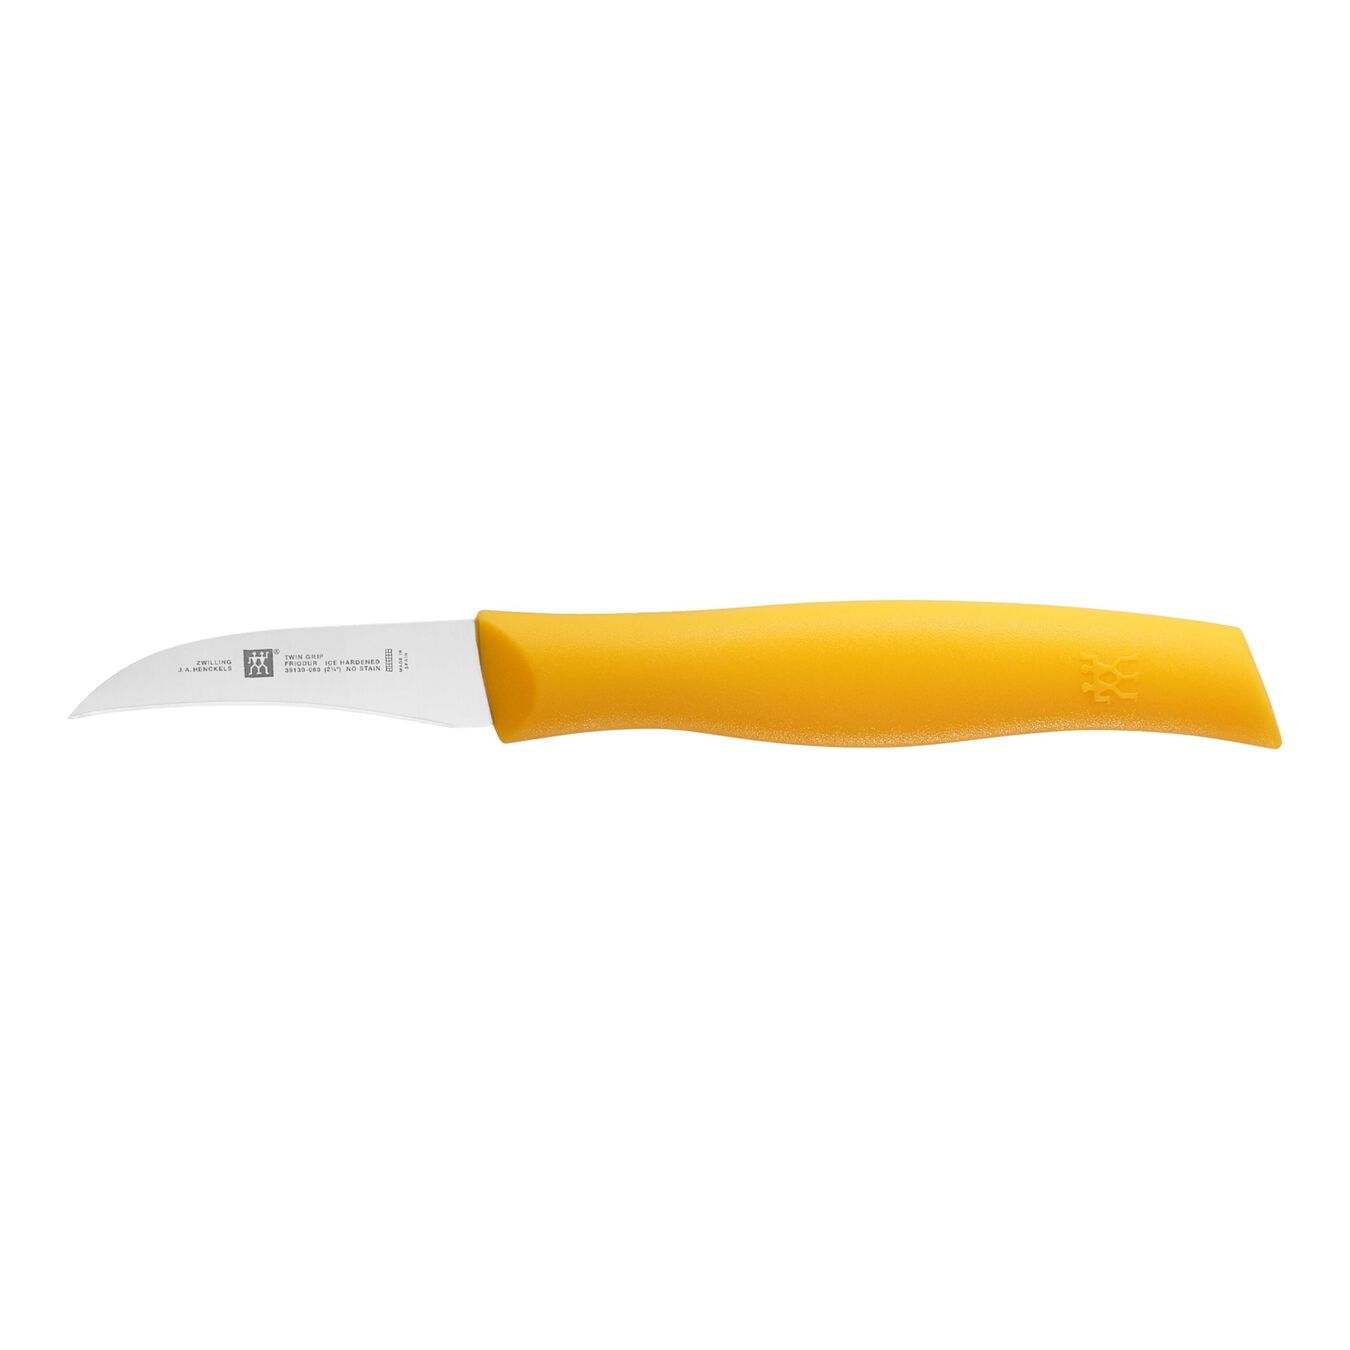 Couteau à éplucher 6 cm, Jaune,,large 1